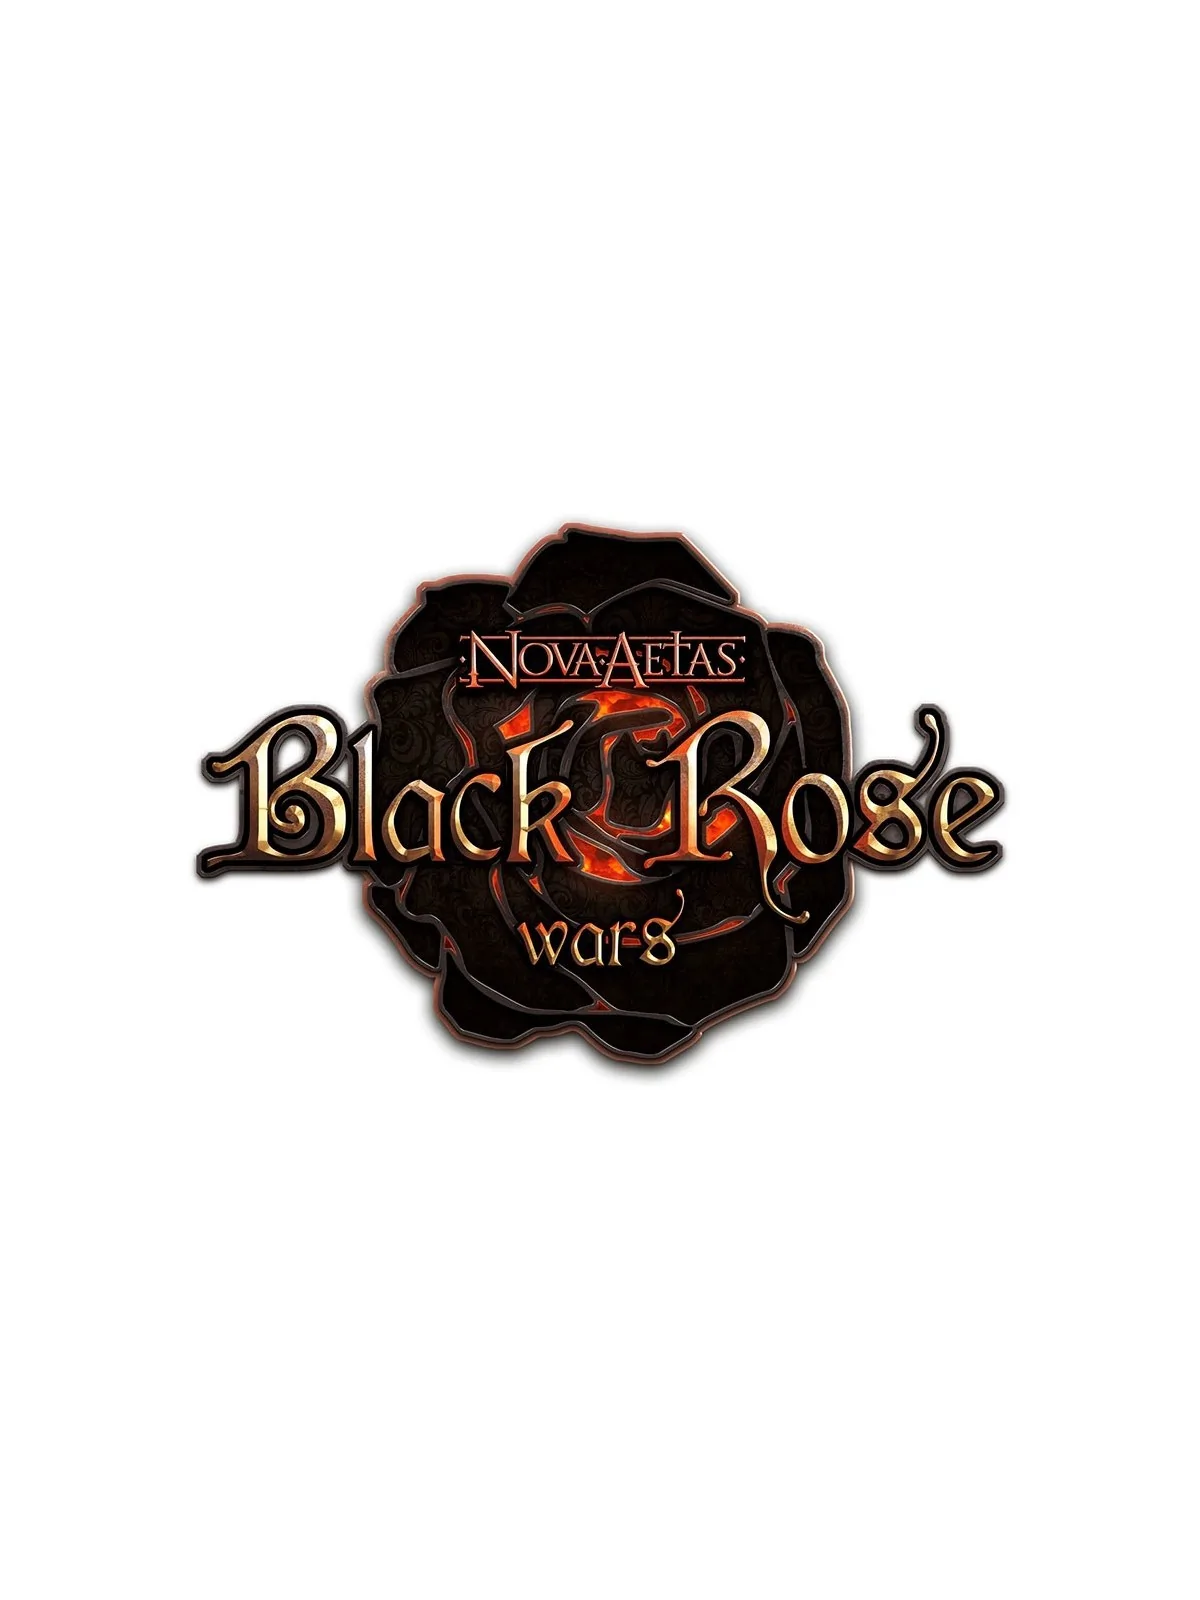 Comprar Black Rose Wars Griffins Pet barato al mejor precio 13,46 € de